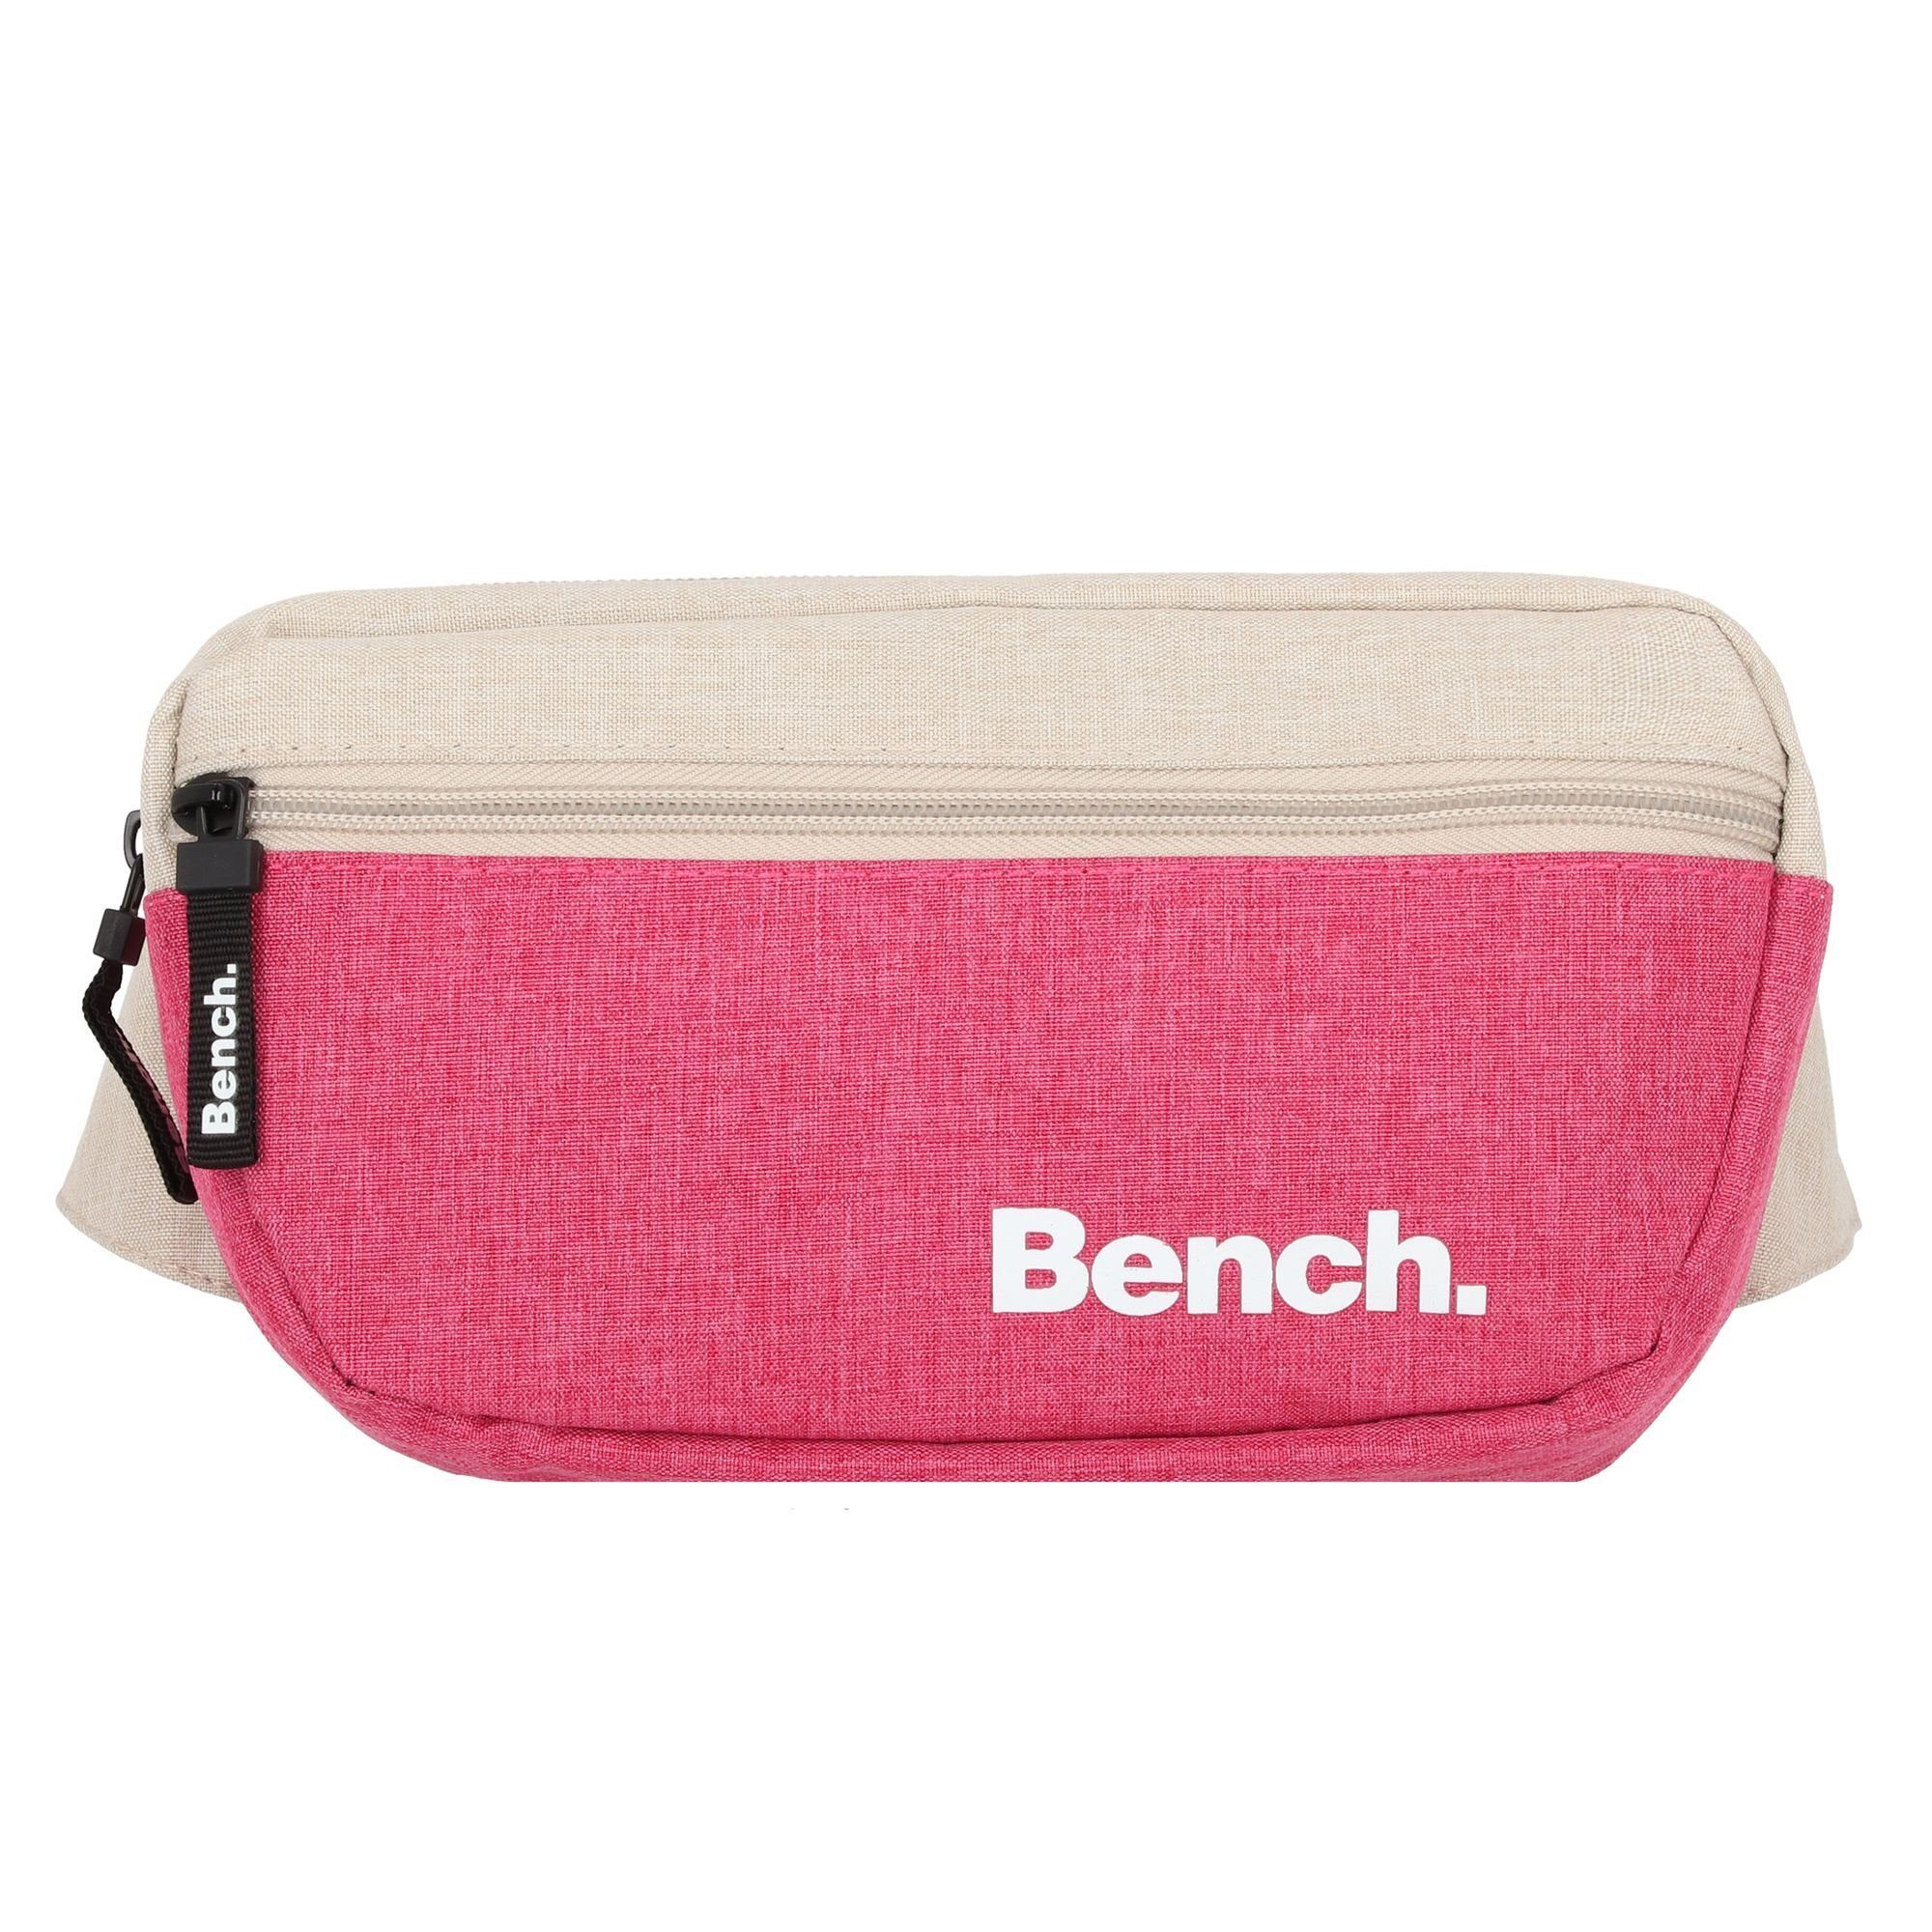 Bench. Gürteltasche classic, Polyester pink-sand